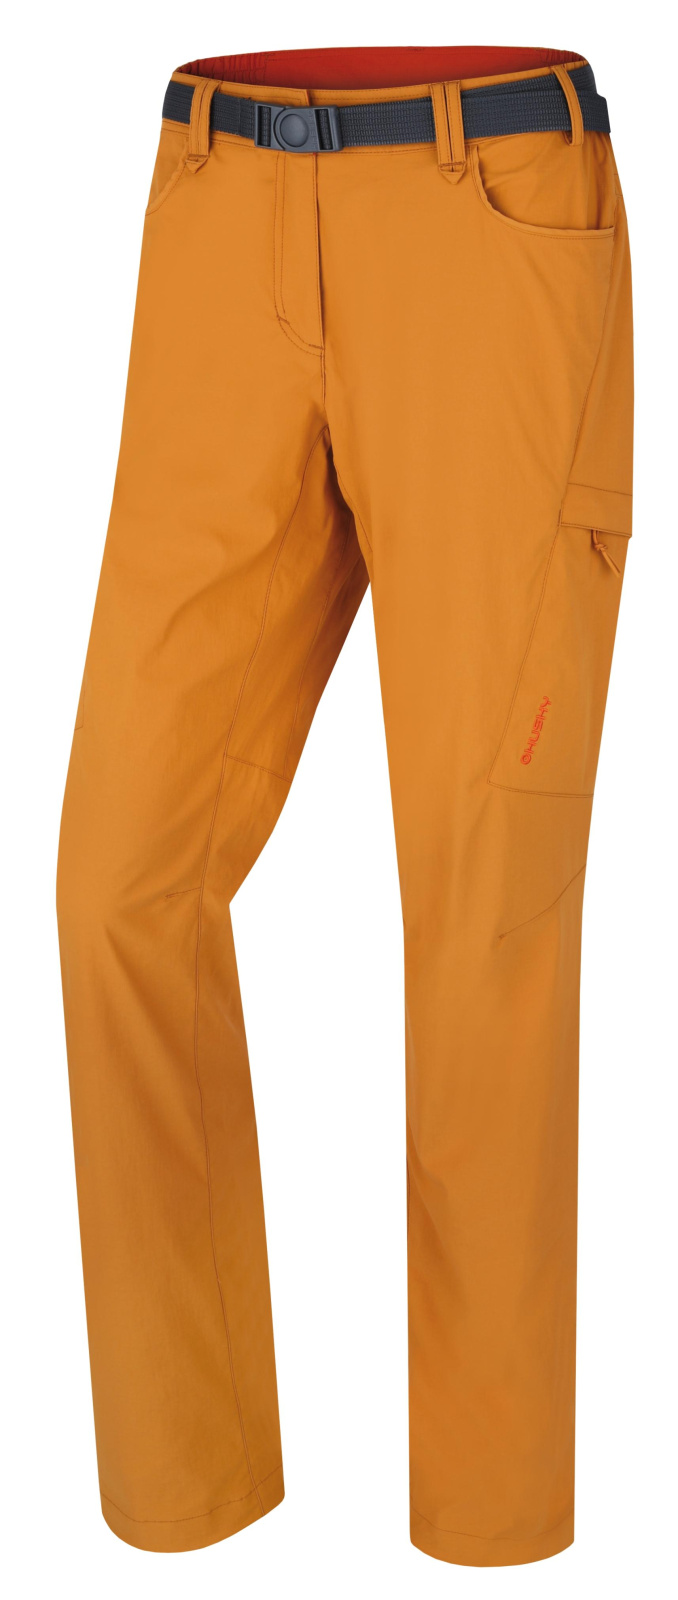 Husky Dámské outdoor kalhoty Kahula L mustard Velikost: M dámské kalhoty